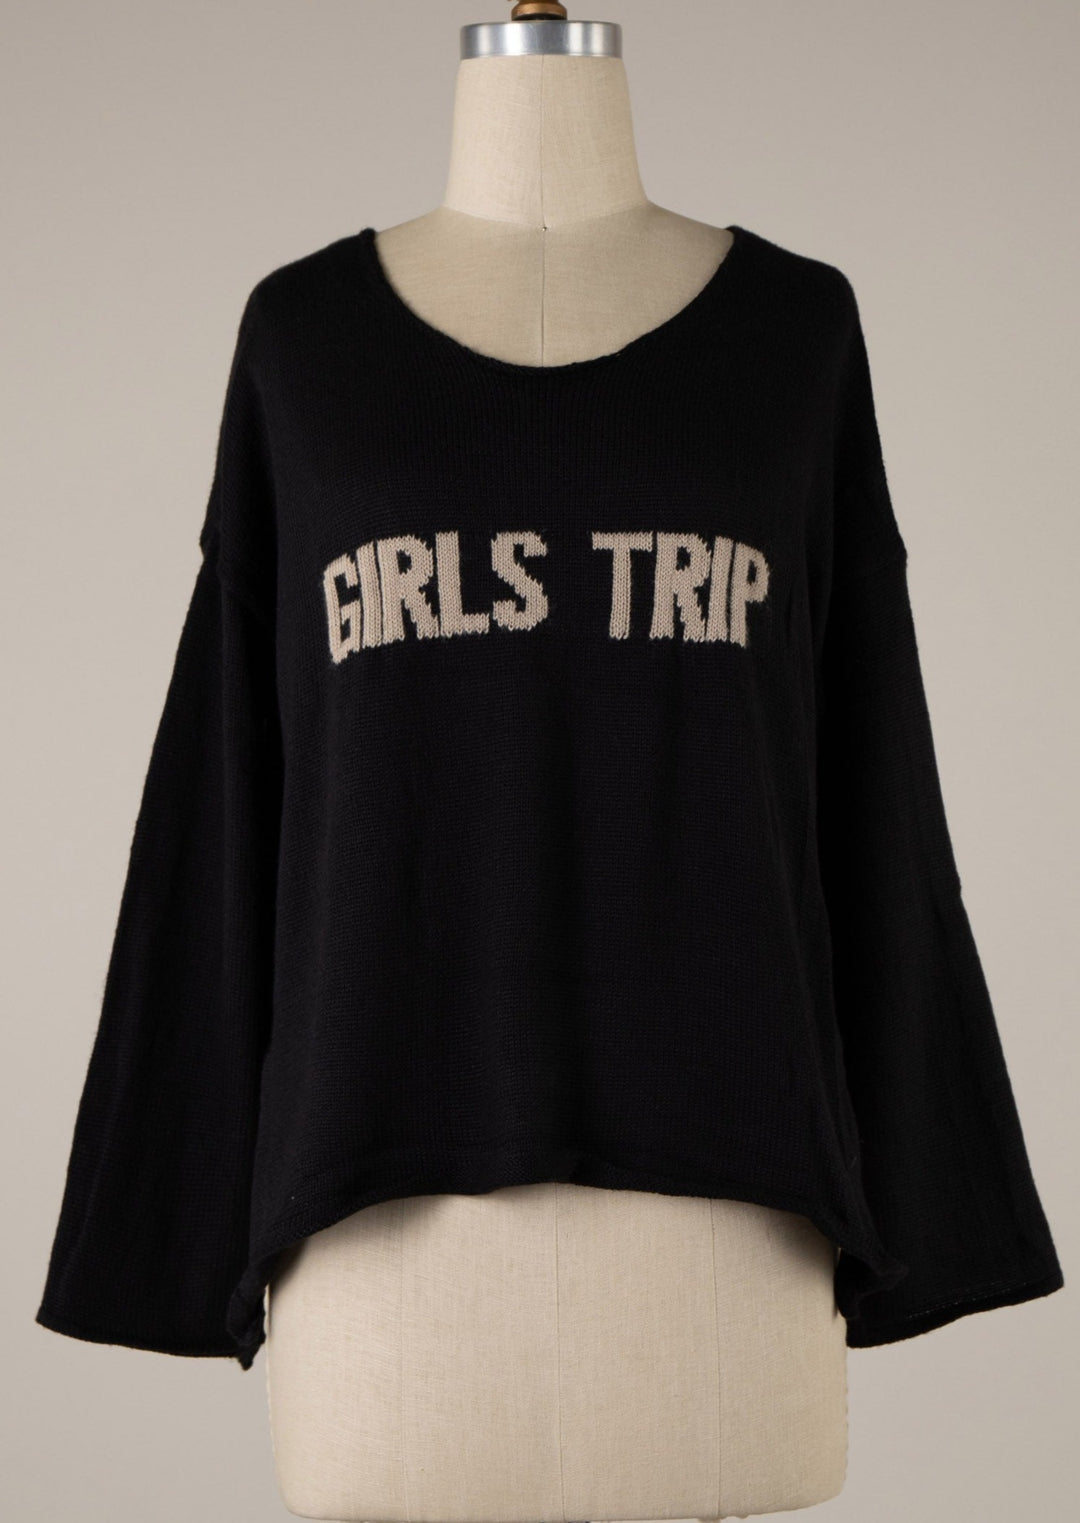 My Cozy Girls Trip Sweater (Black)